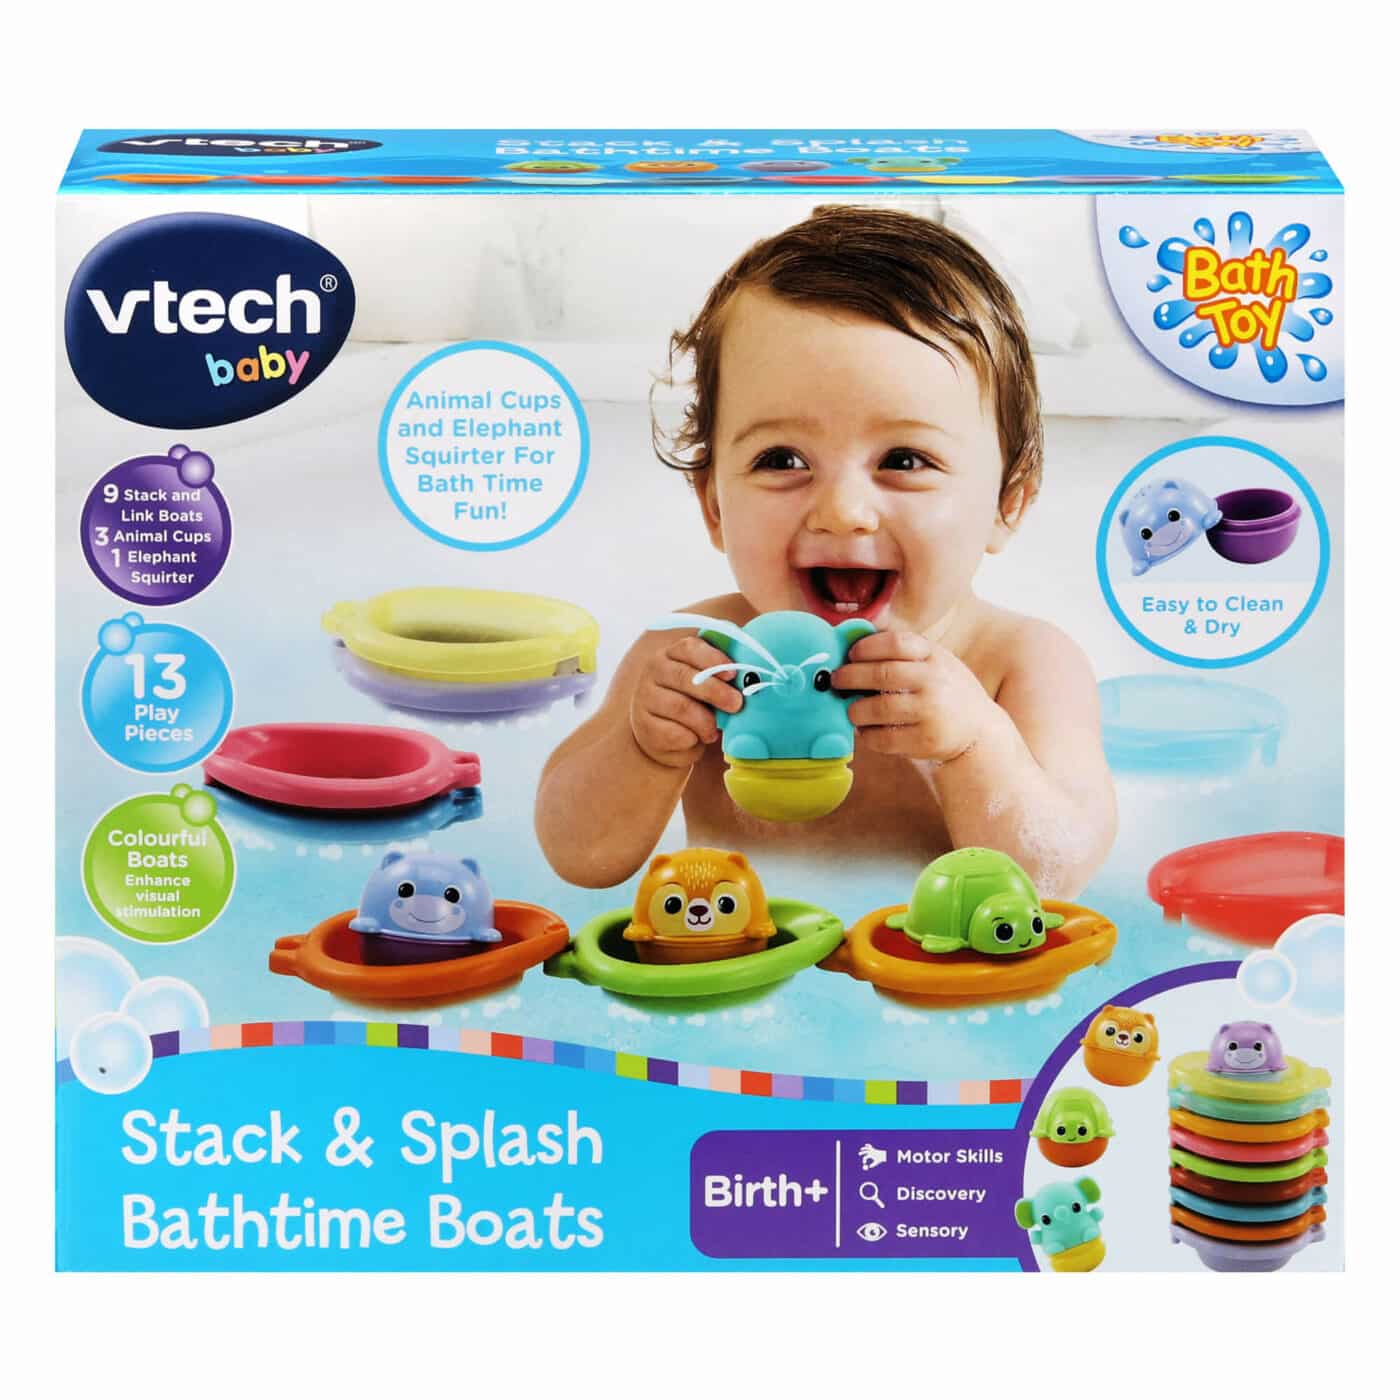 Vtech Baby - Stack & Splash Bathtime Boats